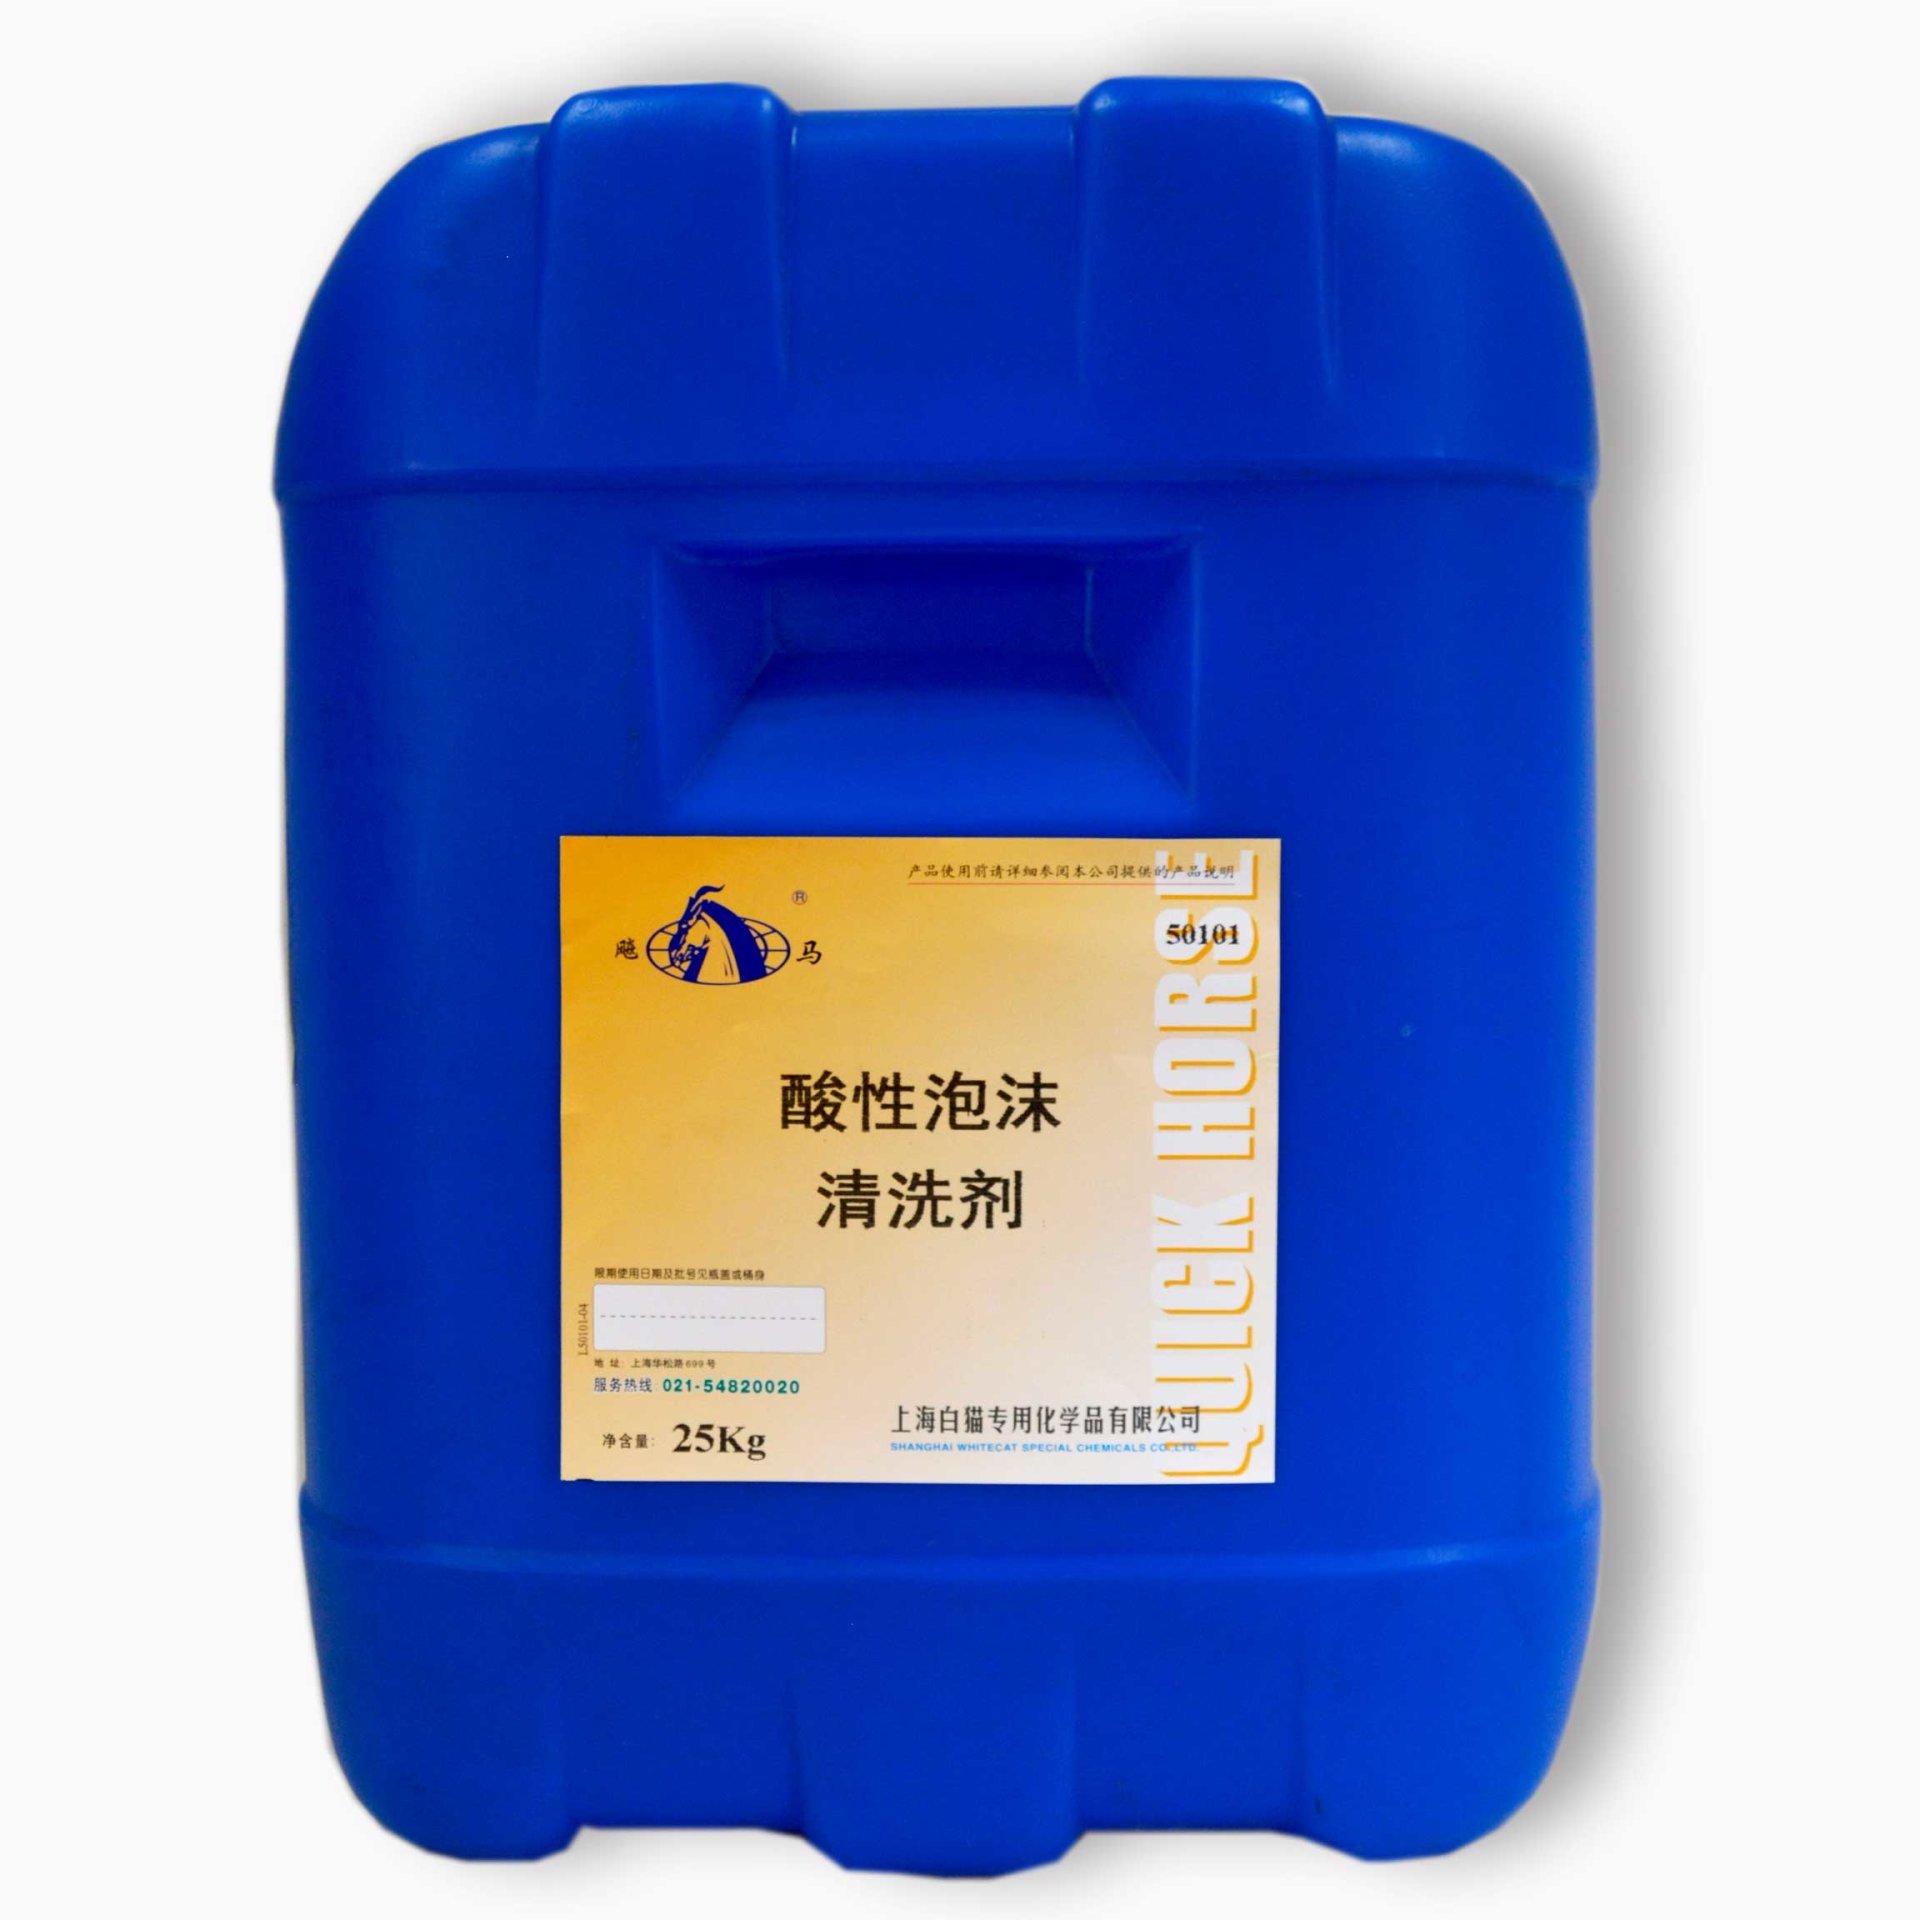 25kg 酸性泡沫清洗剂(50101-04)